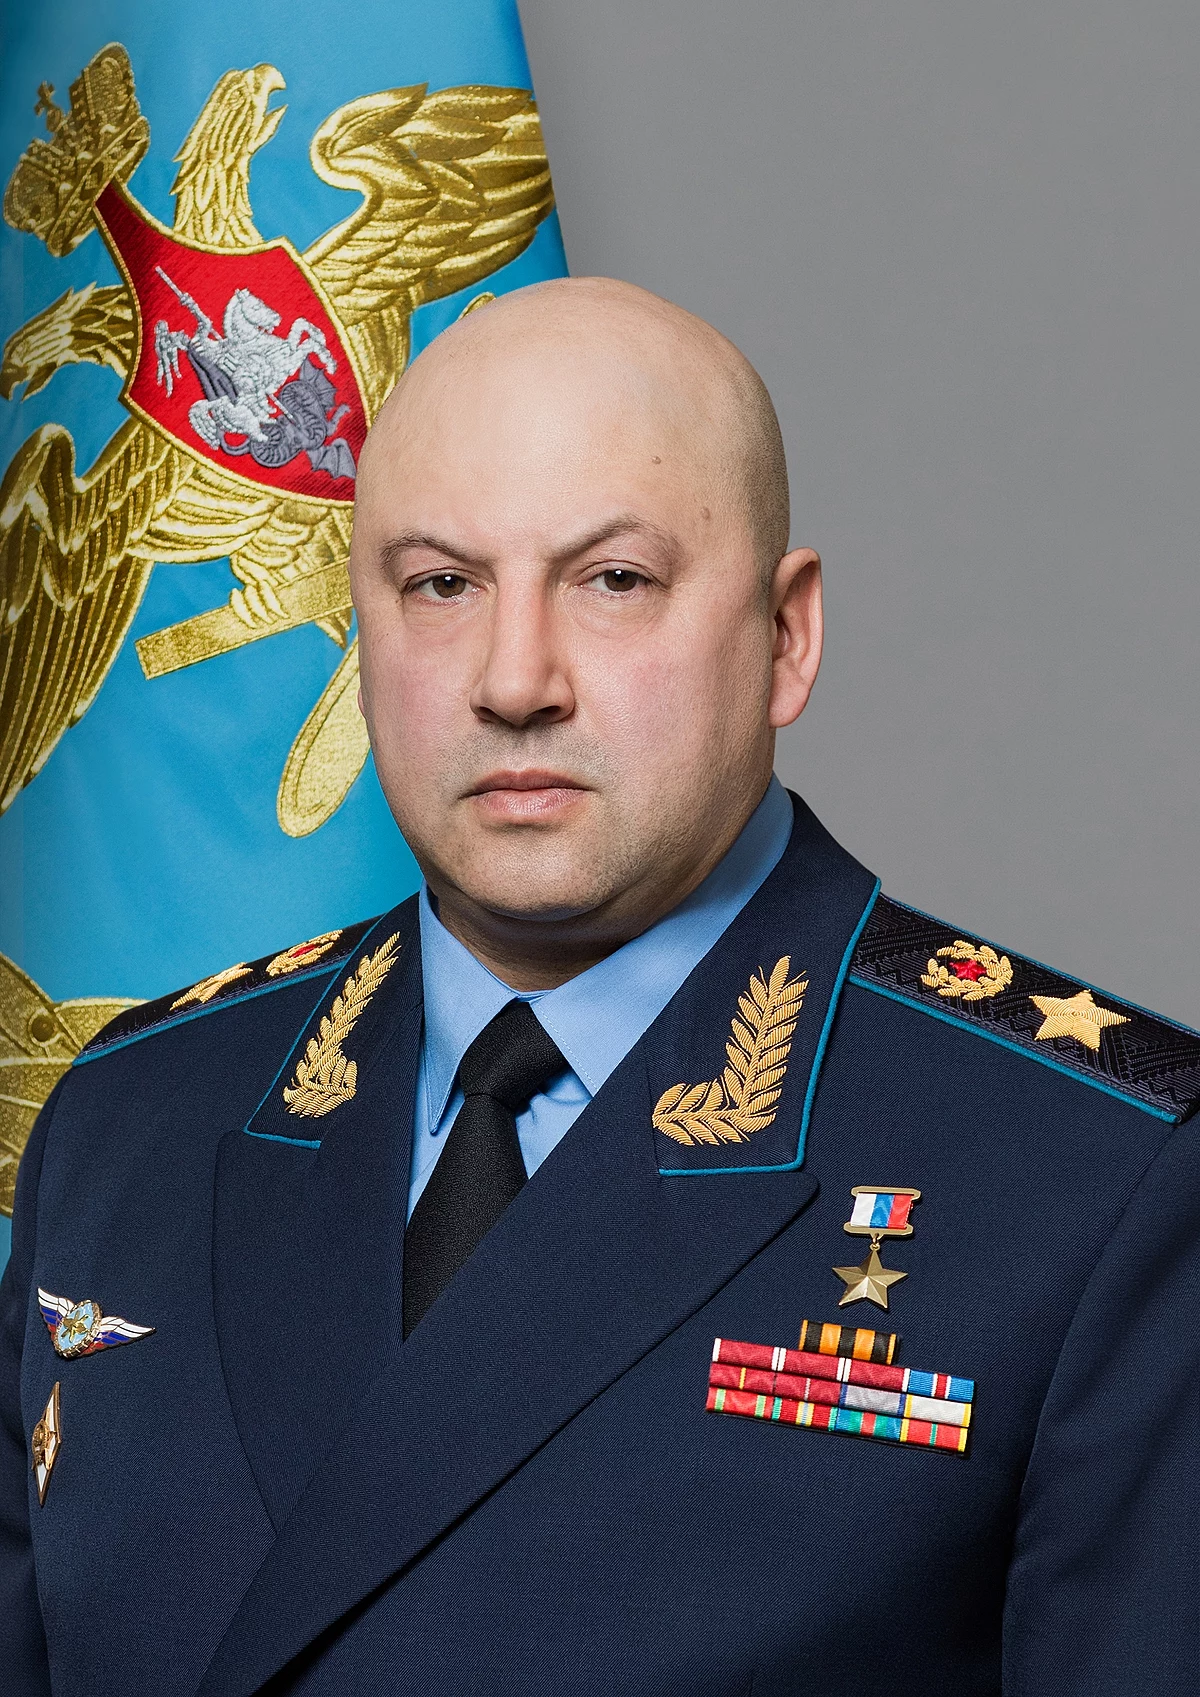 Ruski general Surovikin imenovan zapovjednikom postrojbi u zoni specijalnih operacija | Geopolitika News